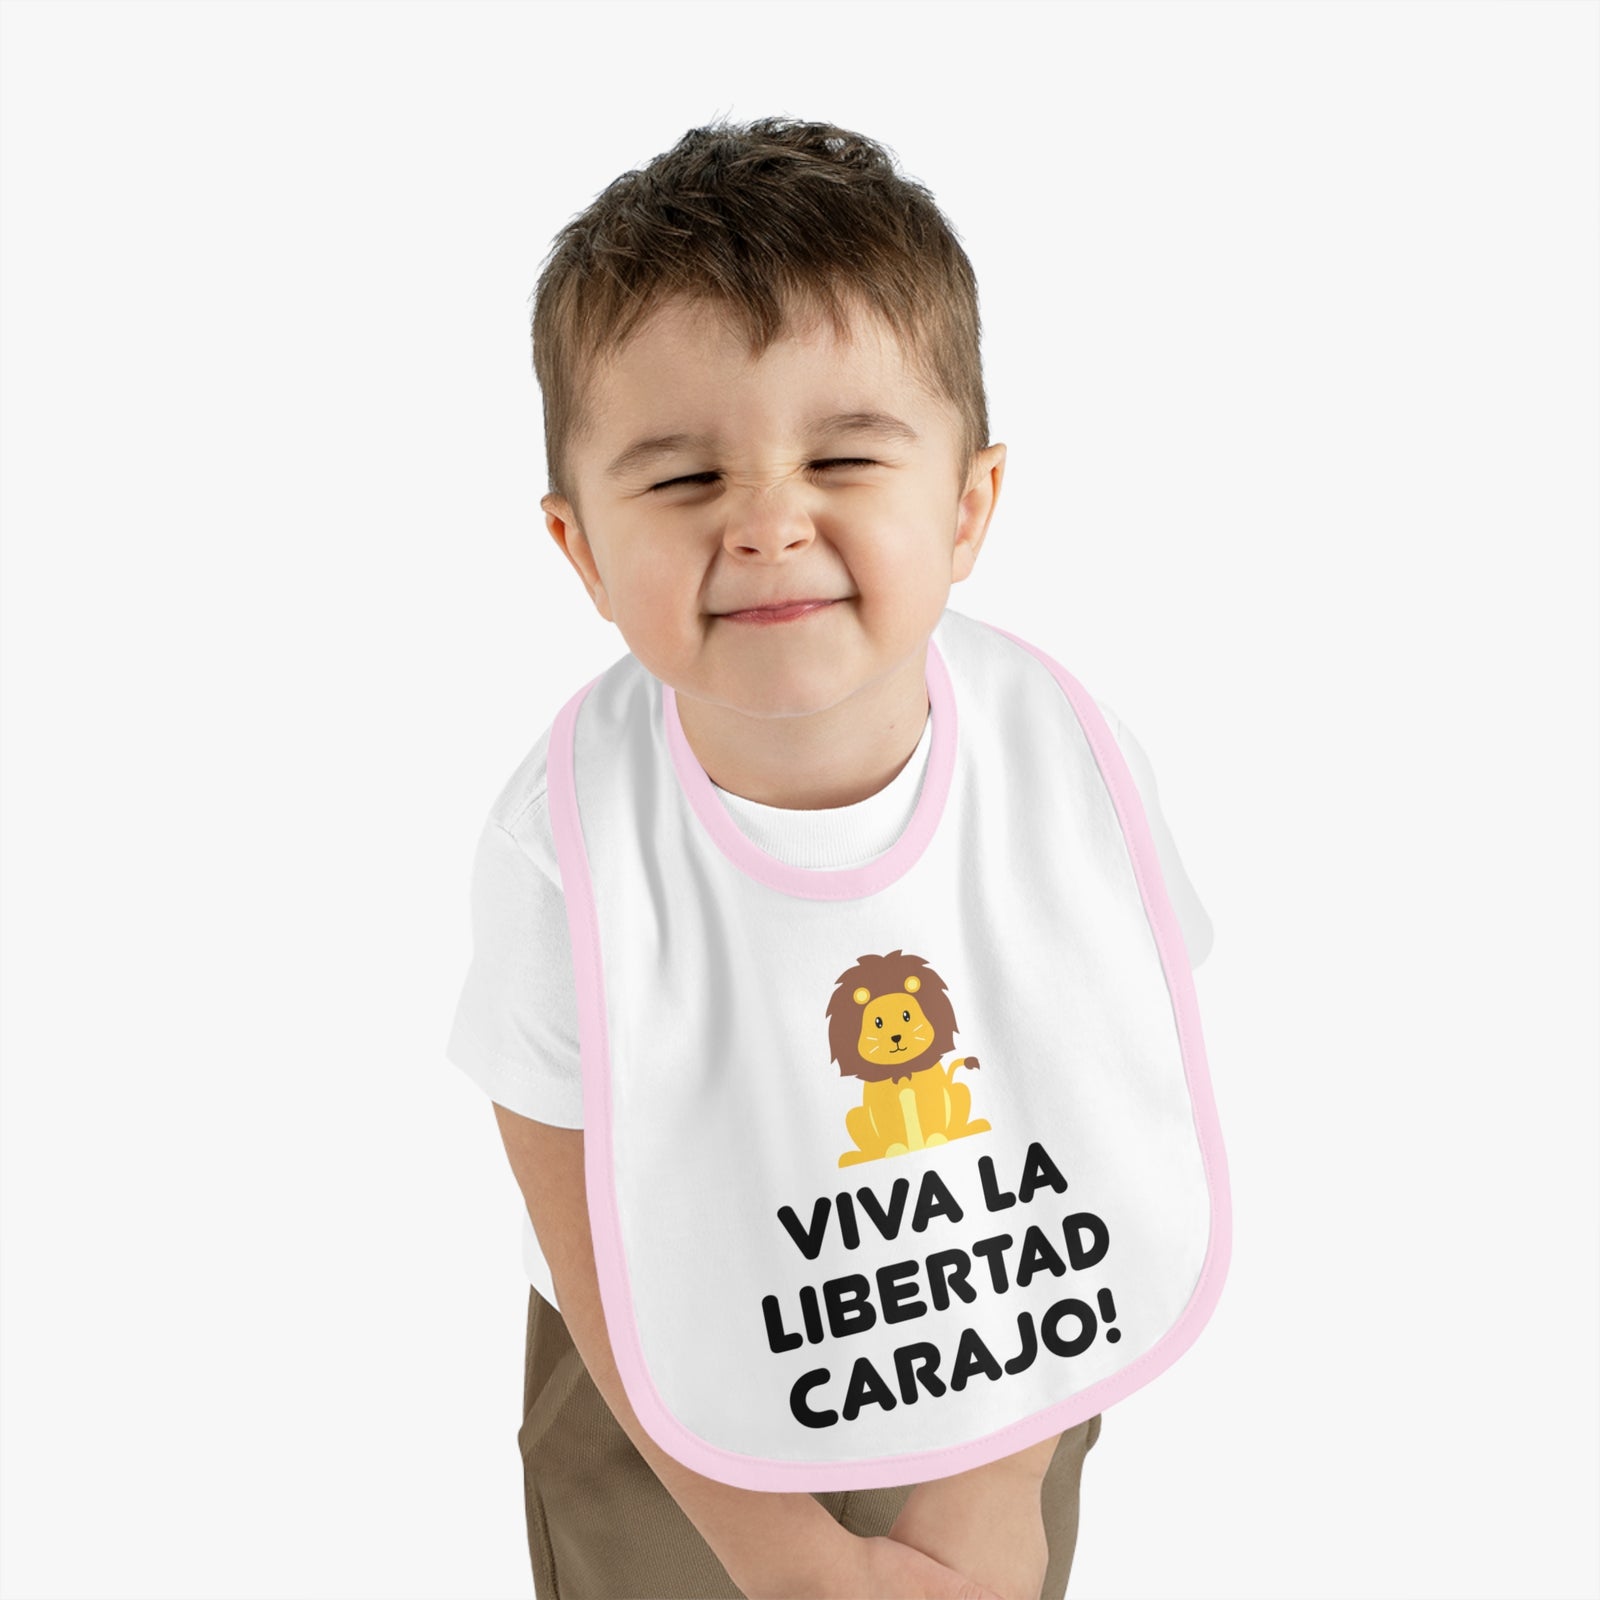 Viva La Libertad Carajo Lion Baby Bib